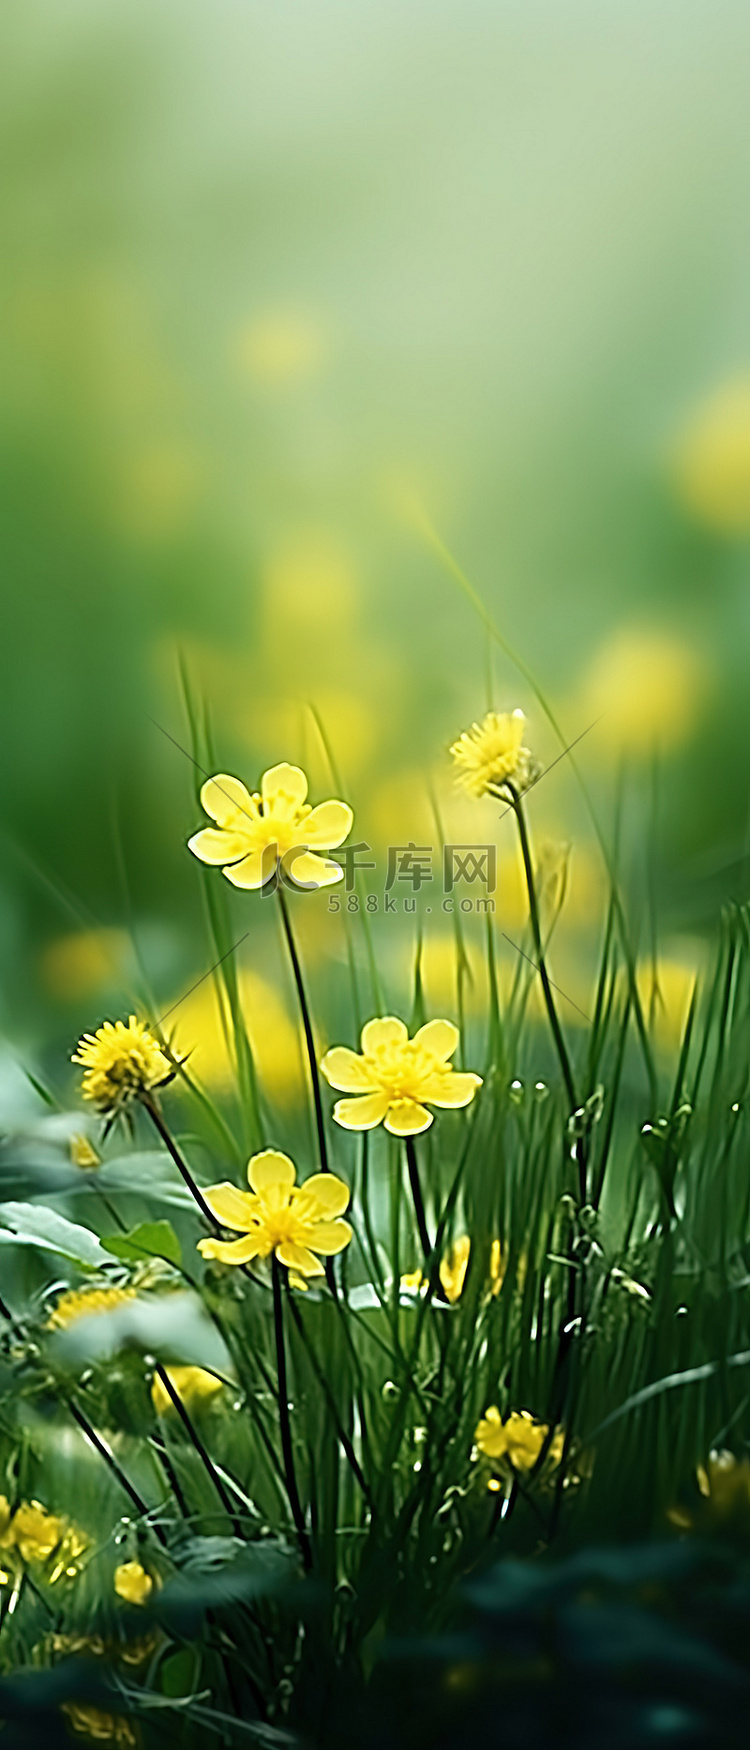 棕色草丛中生长的美丽黄色花朵的